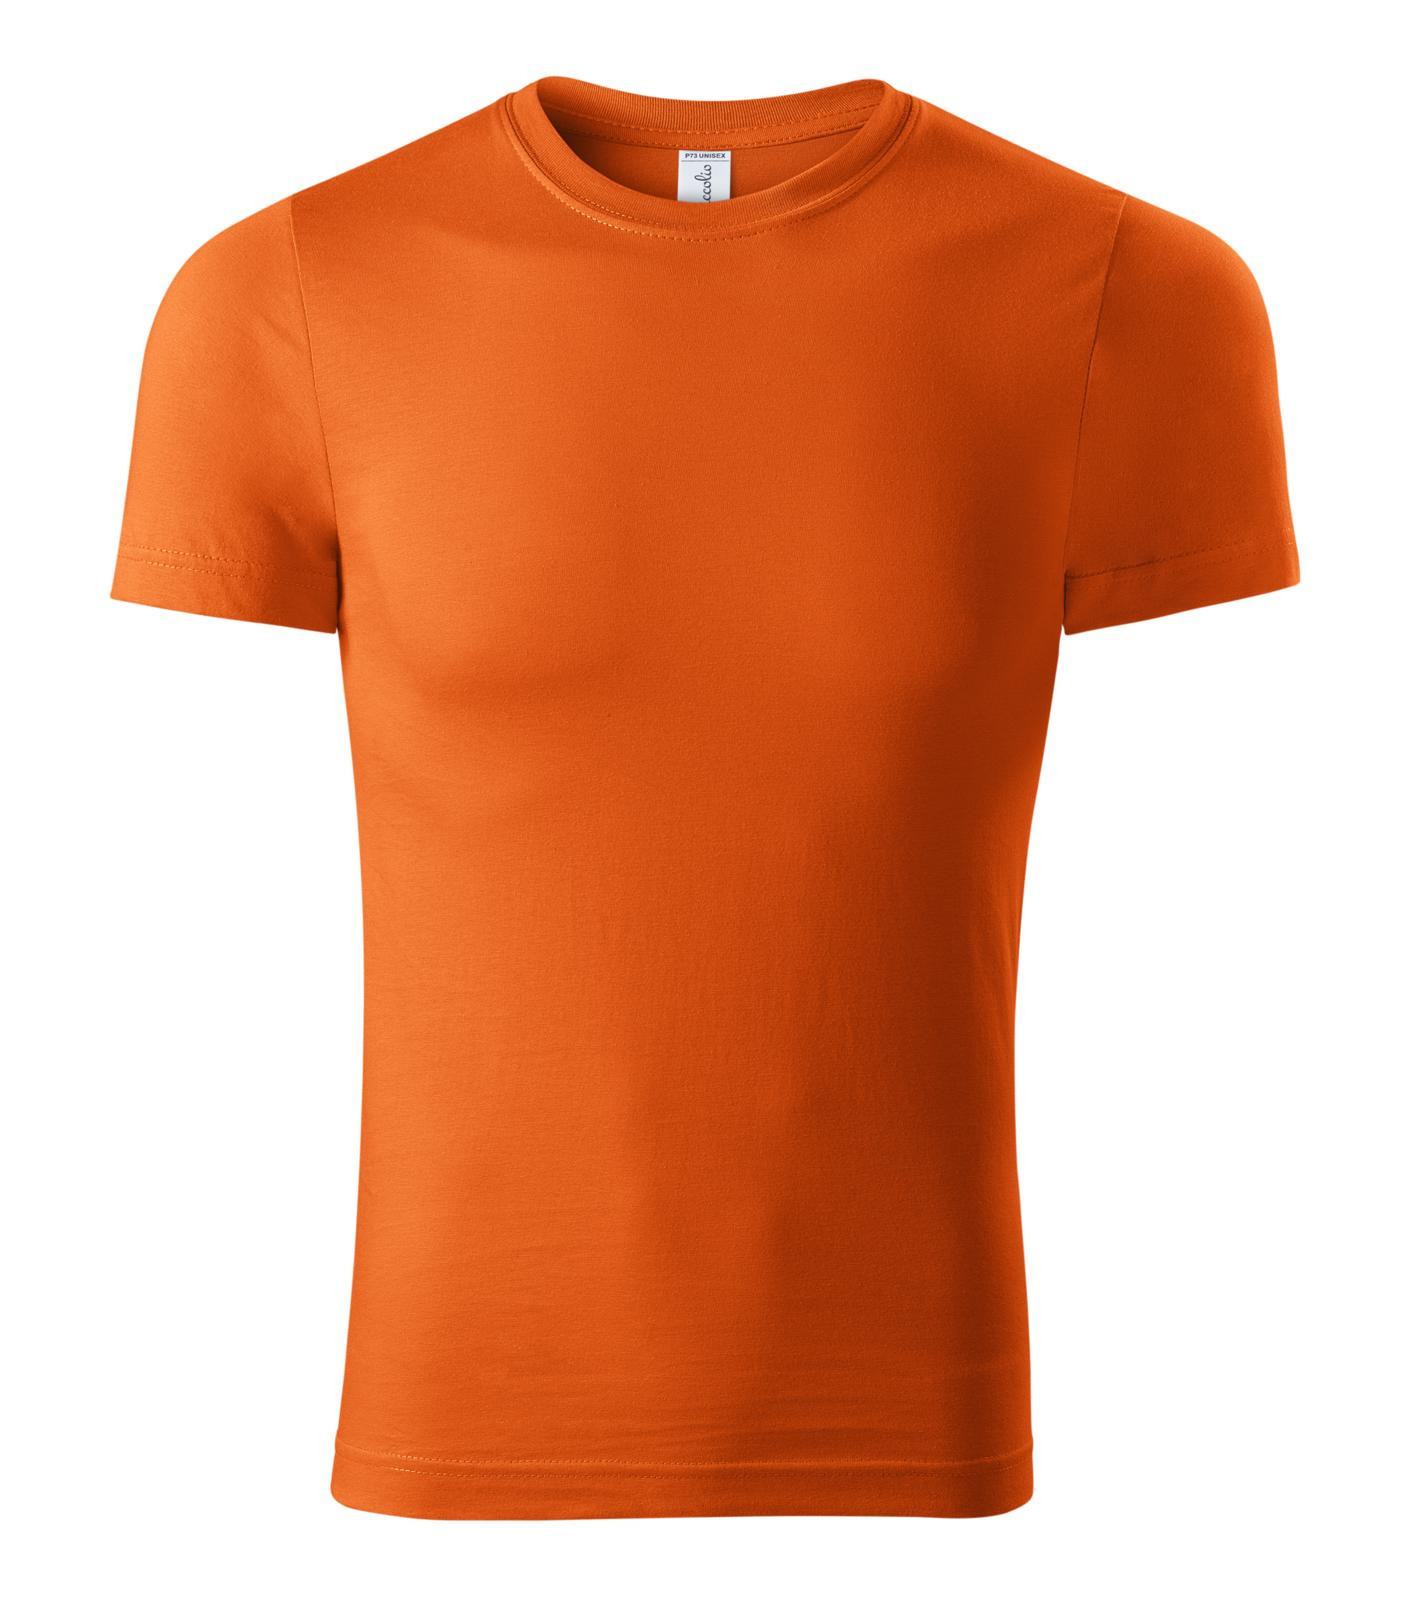 Unisex tričko Piccolio Paint P73 - veľkosť: 3XL, farba: oranžová